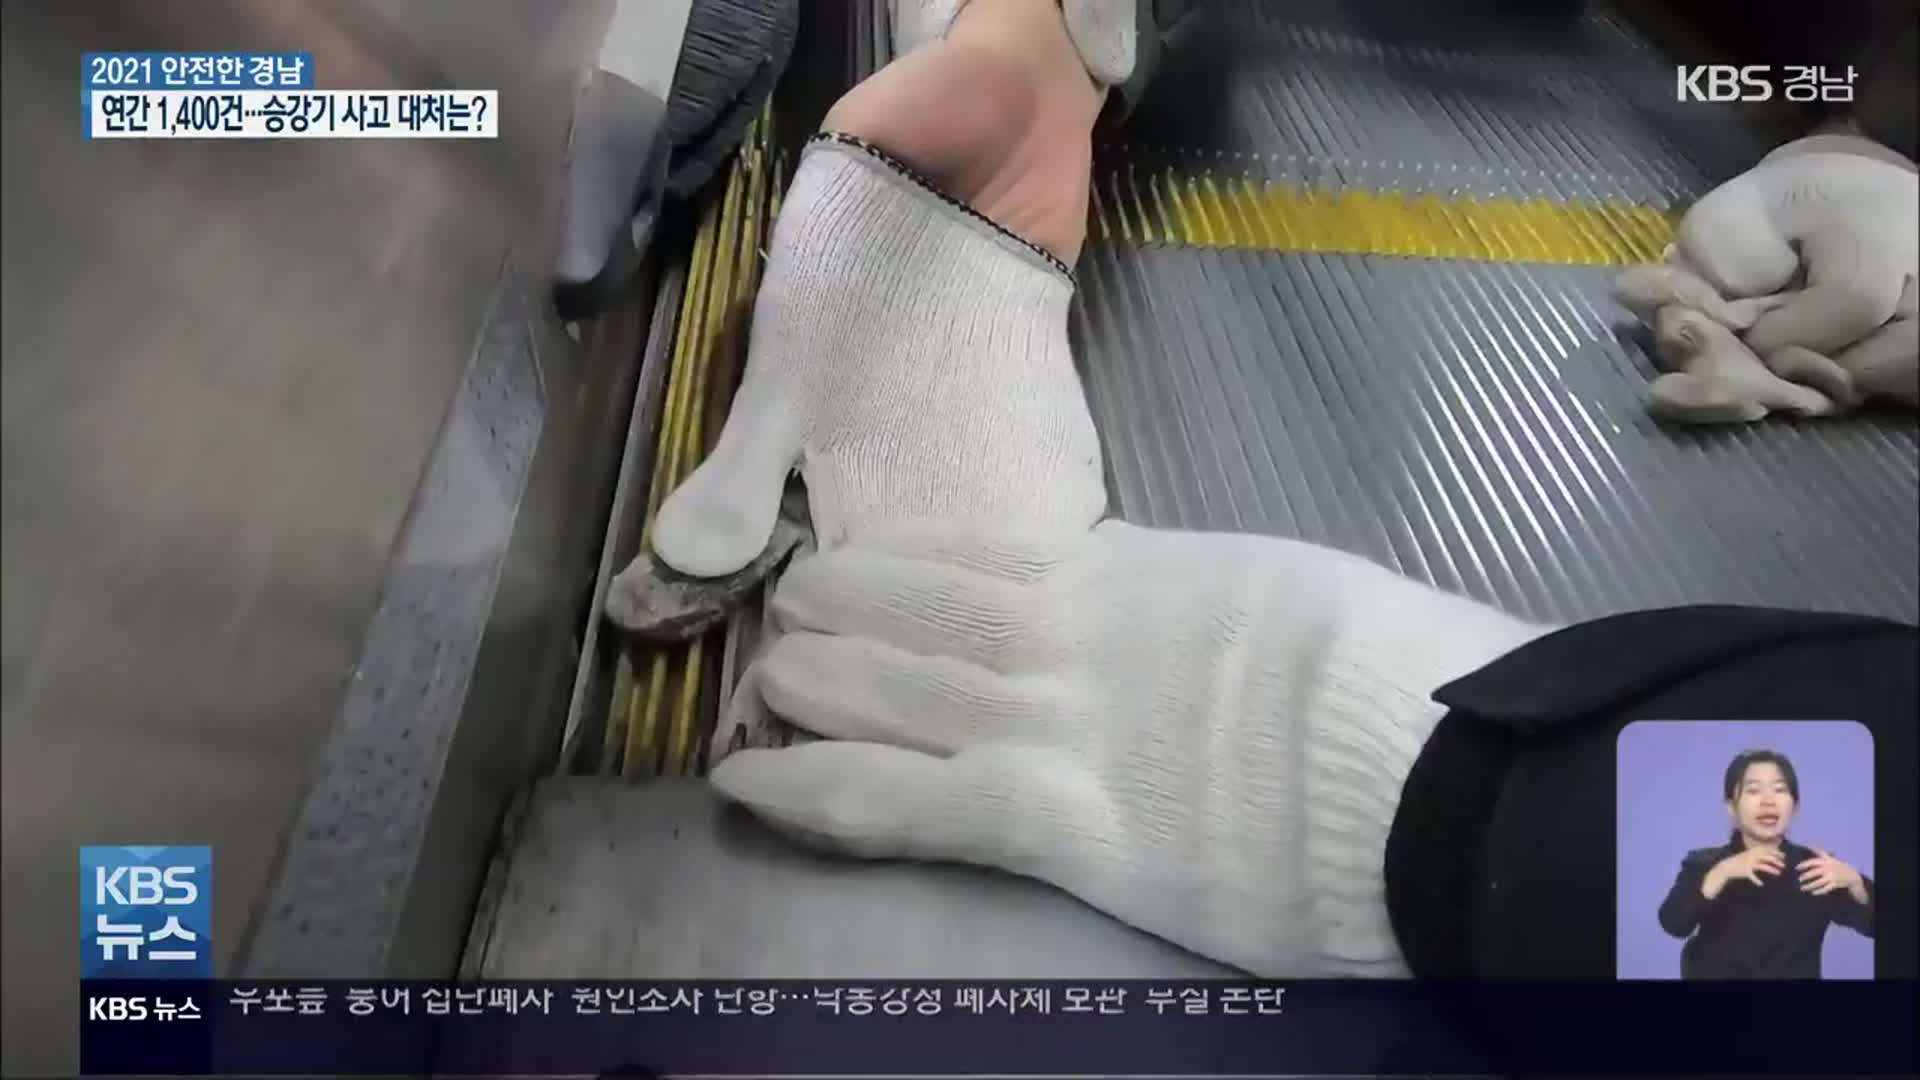 [안전]⑪ 승강기에 갇히거나 끼였을 때 이렇게 대처하세요!